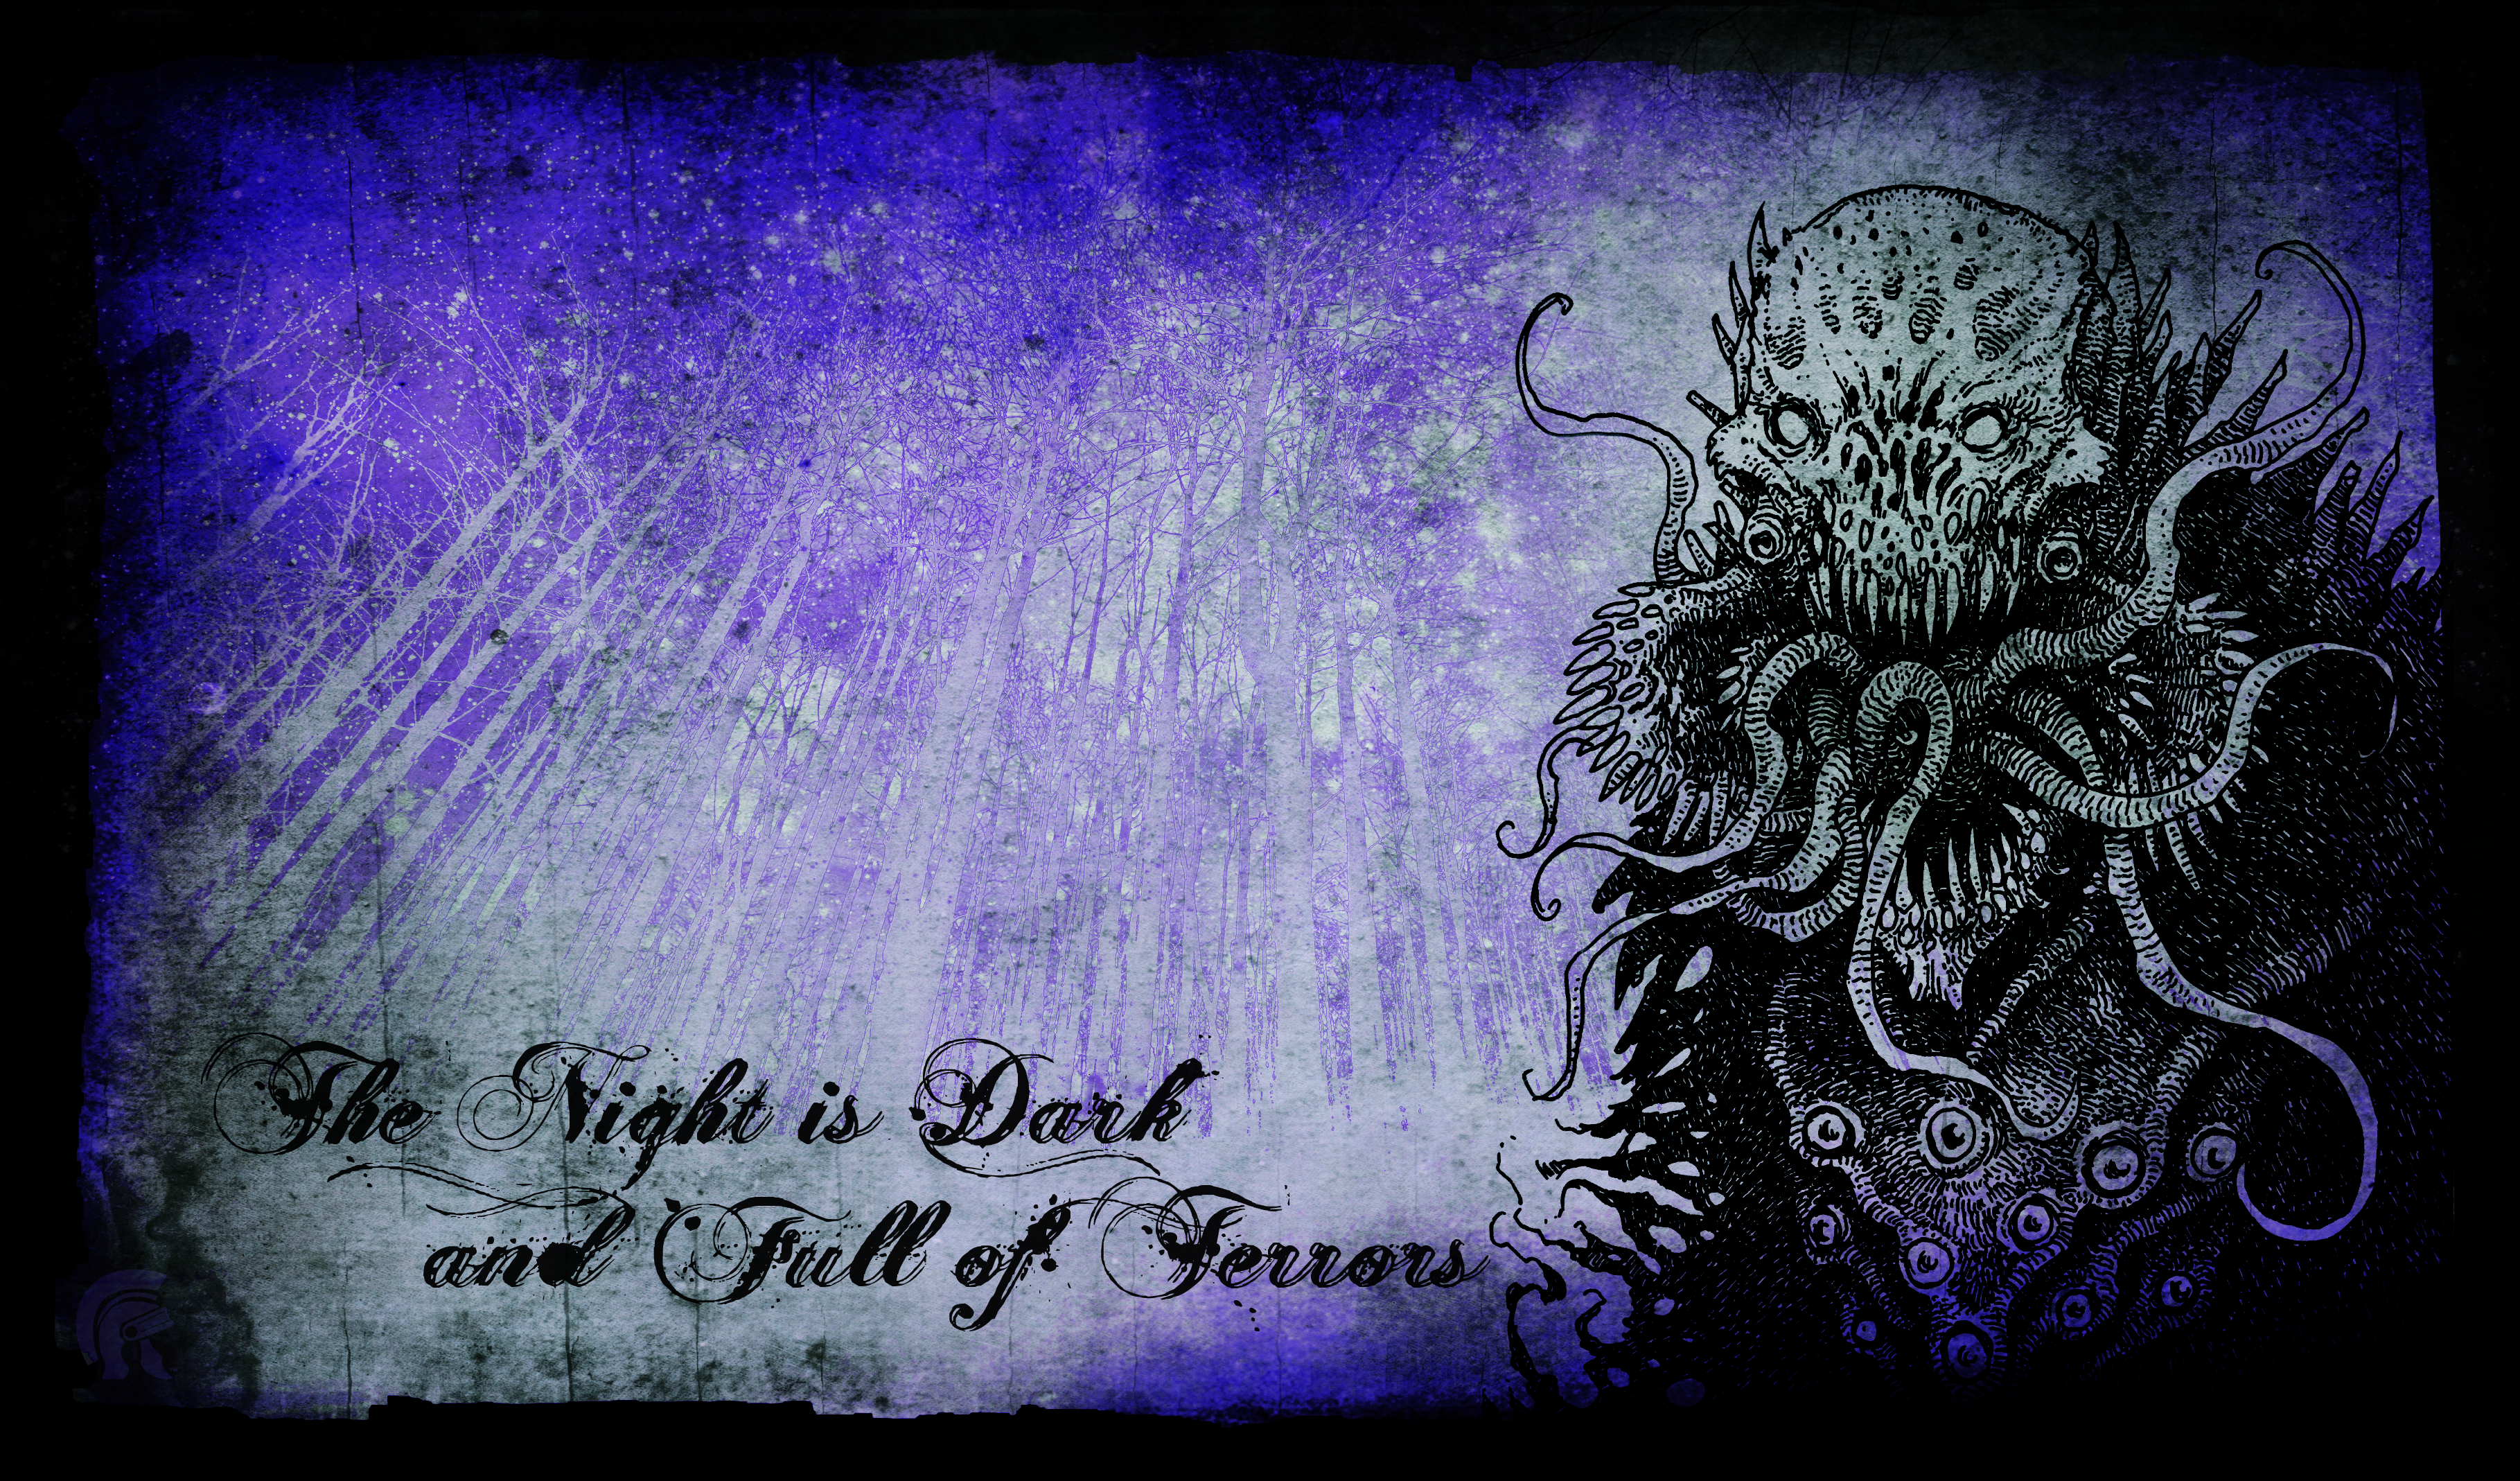 Fibersoft Playmat - The Night is Dark